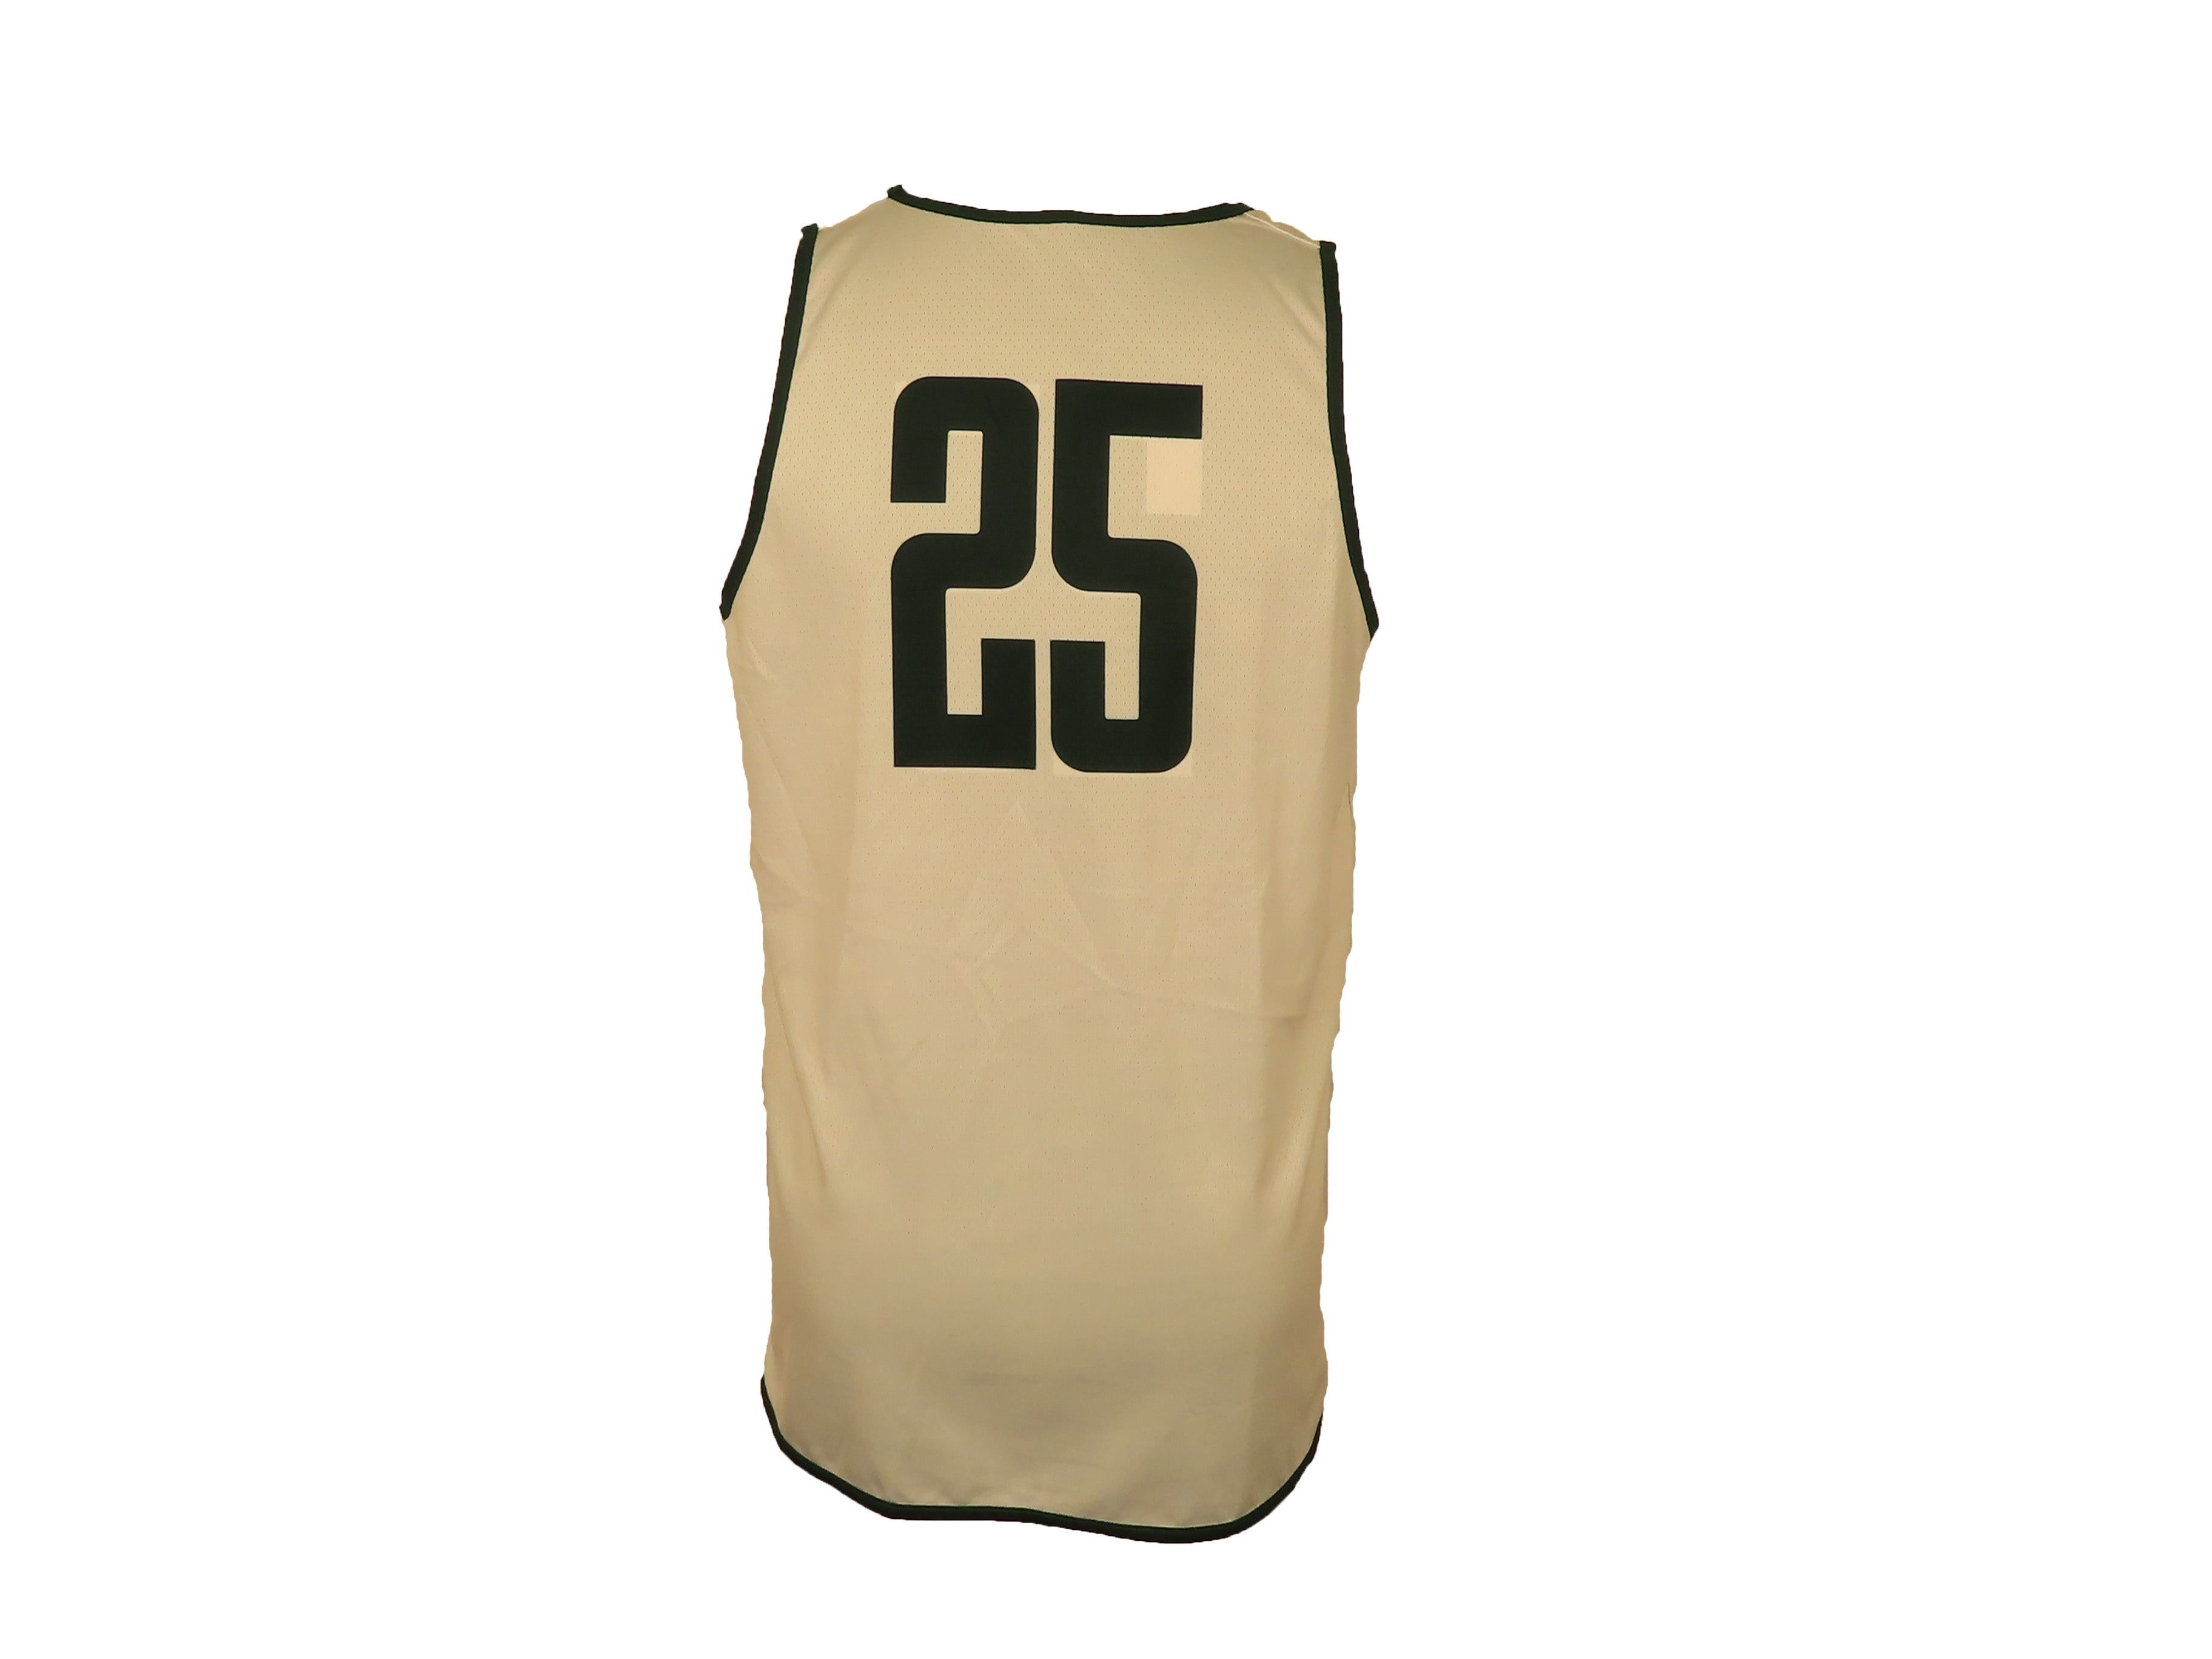 Nike Green & White Reversible Women's Basketball #25 Jersey Size L